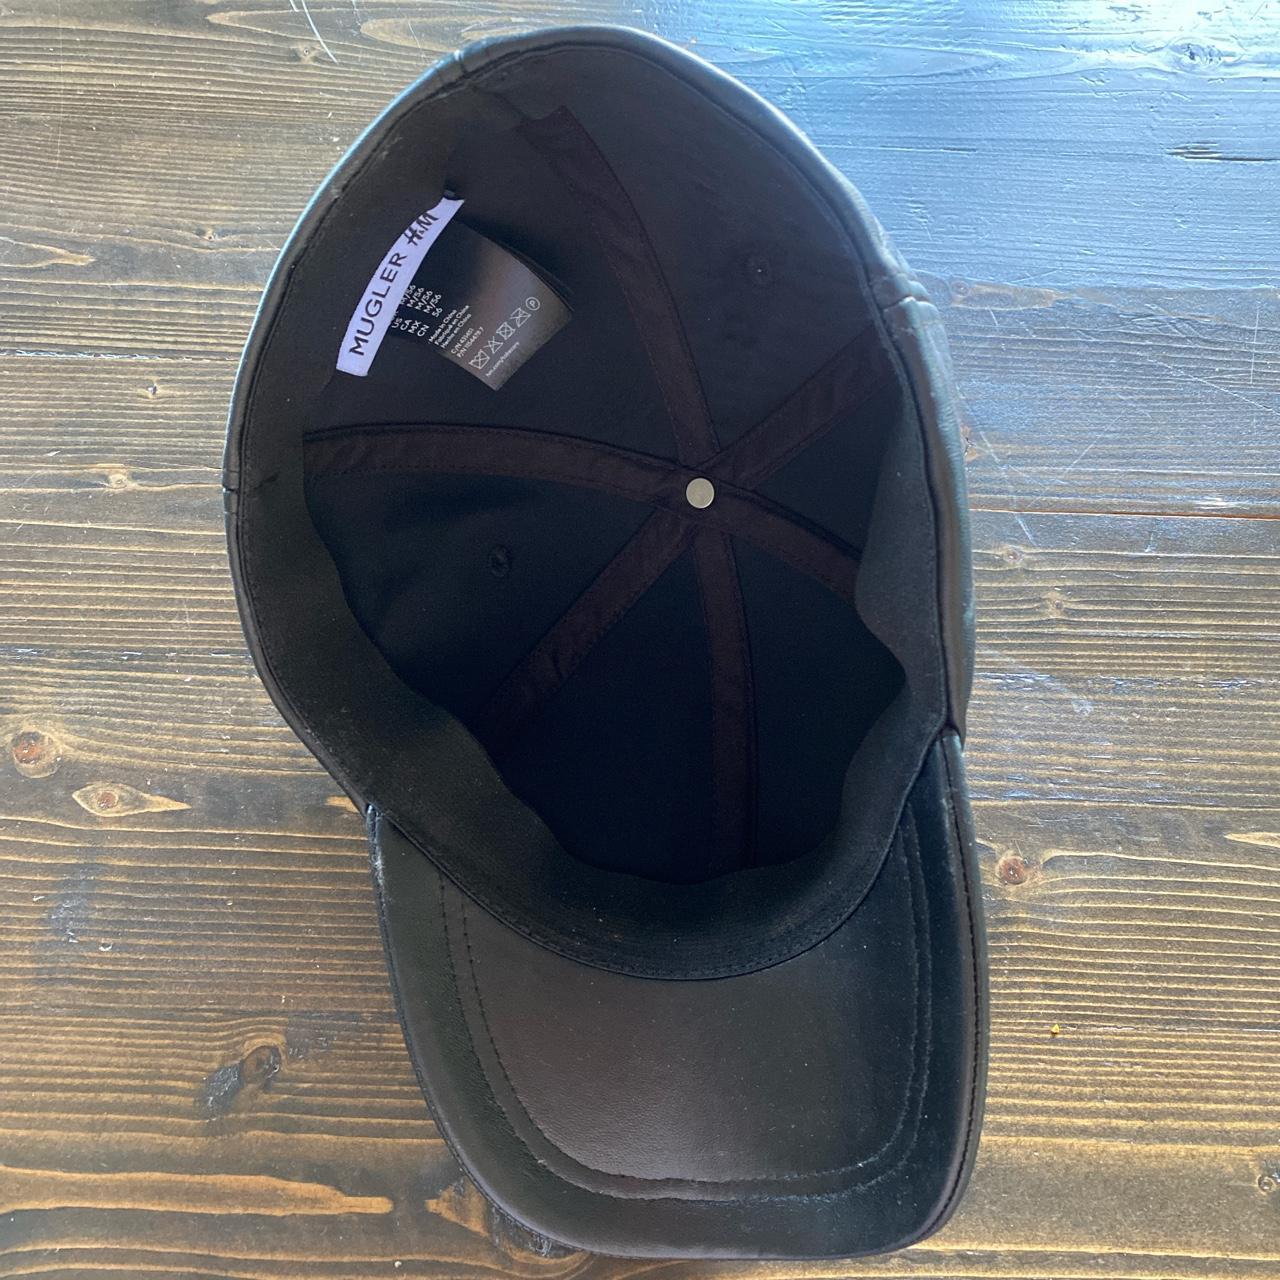 Sold Out Mugler x H&M Genuine Leather Baseball Hat... - Depop